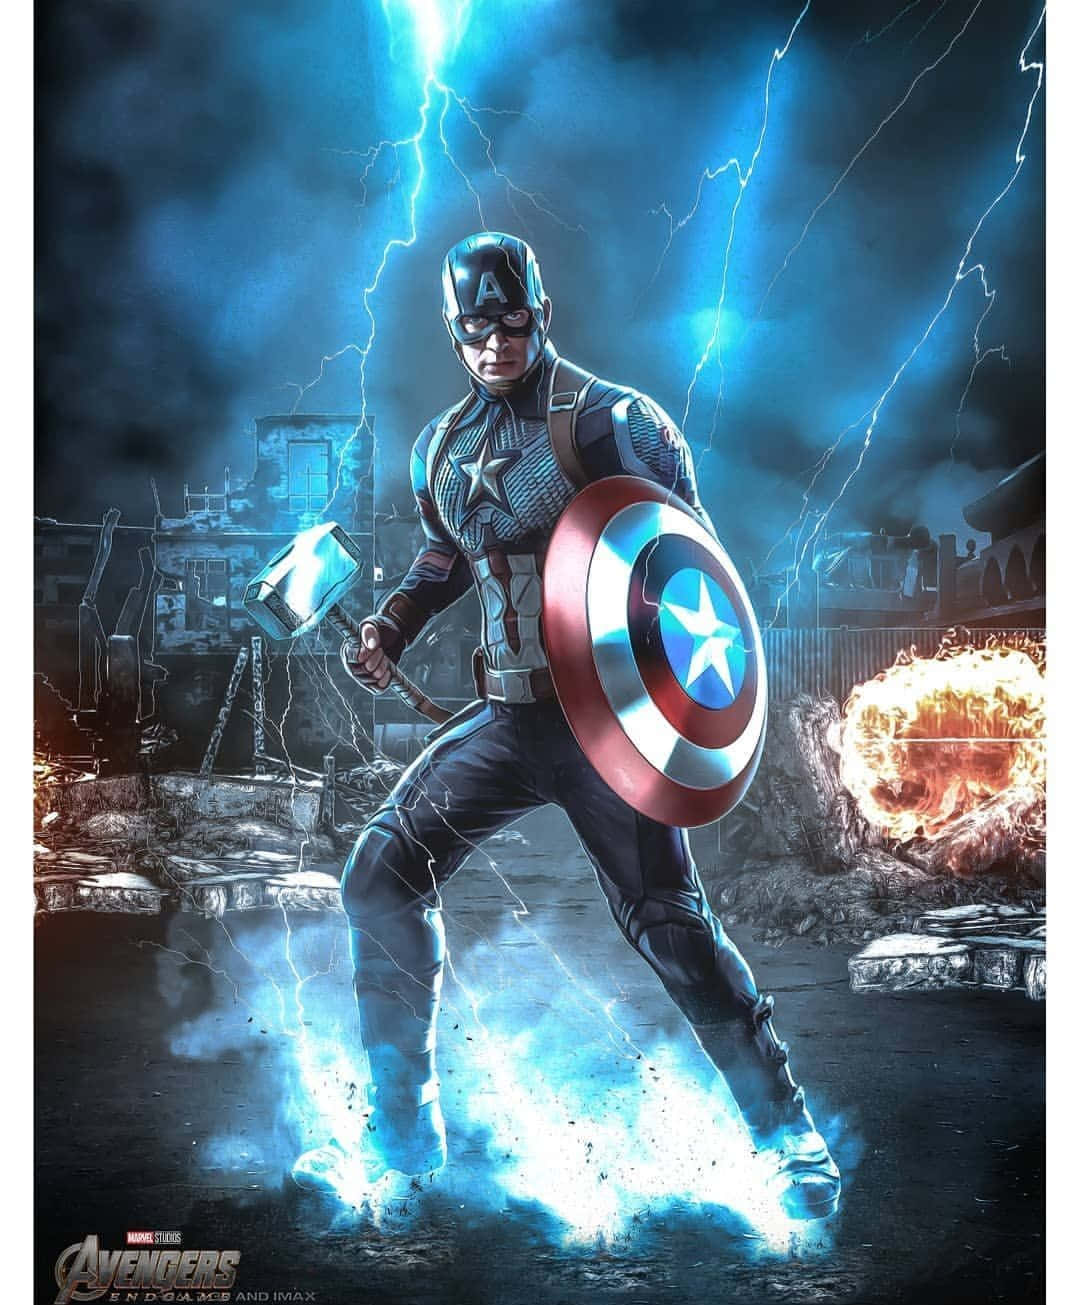 Captain America Worthy Avengers Endgame Poster Background